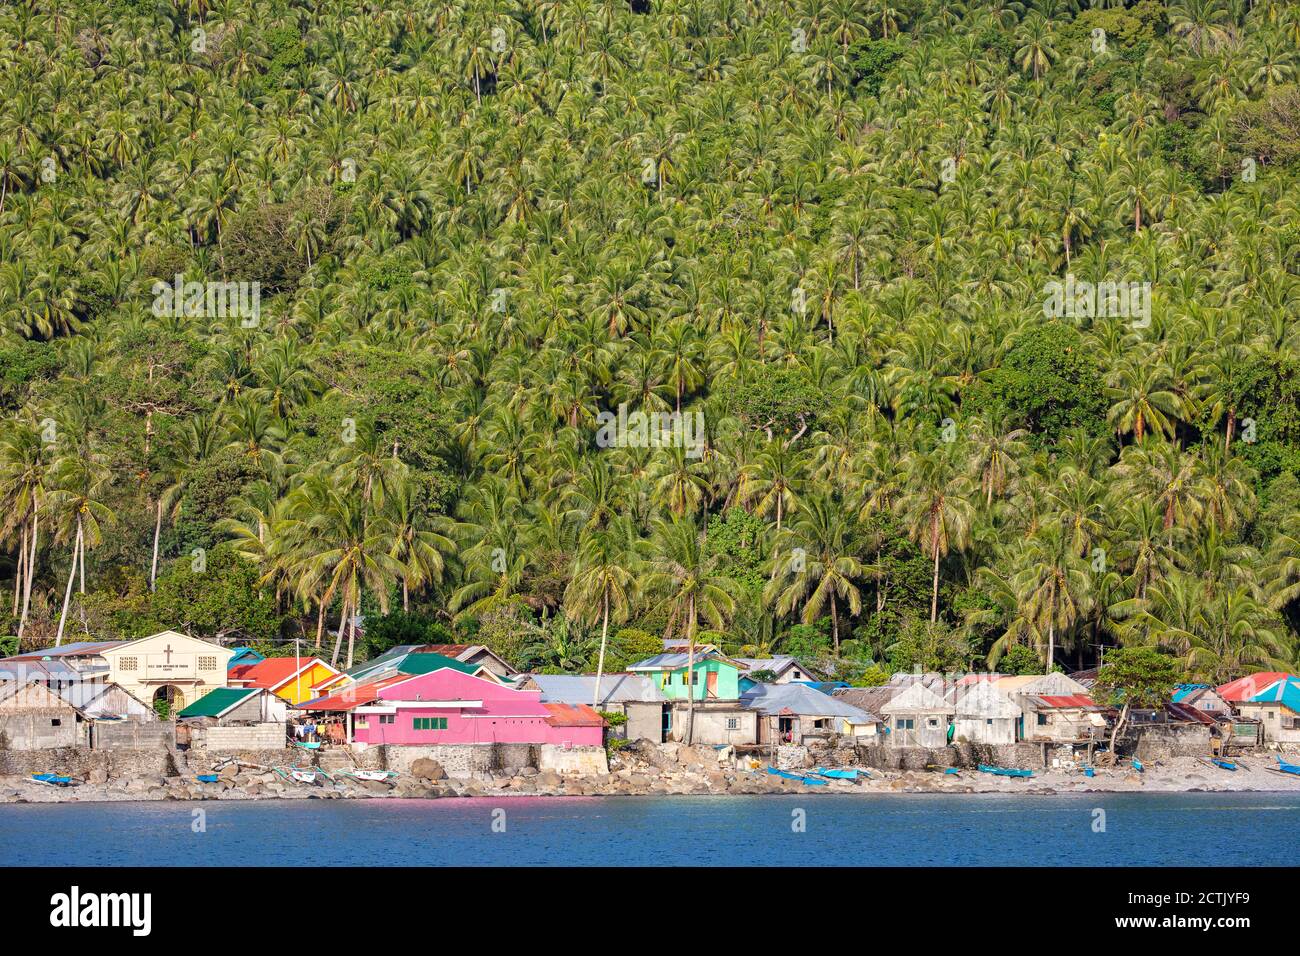 Une montagne de palmiers à noix de coco s'élève au-dessus du village de son-ok à l'extrémité sud de l'île de Leyte, aux Philippines. Banque D'Images